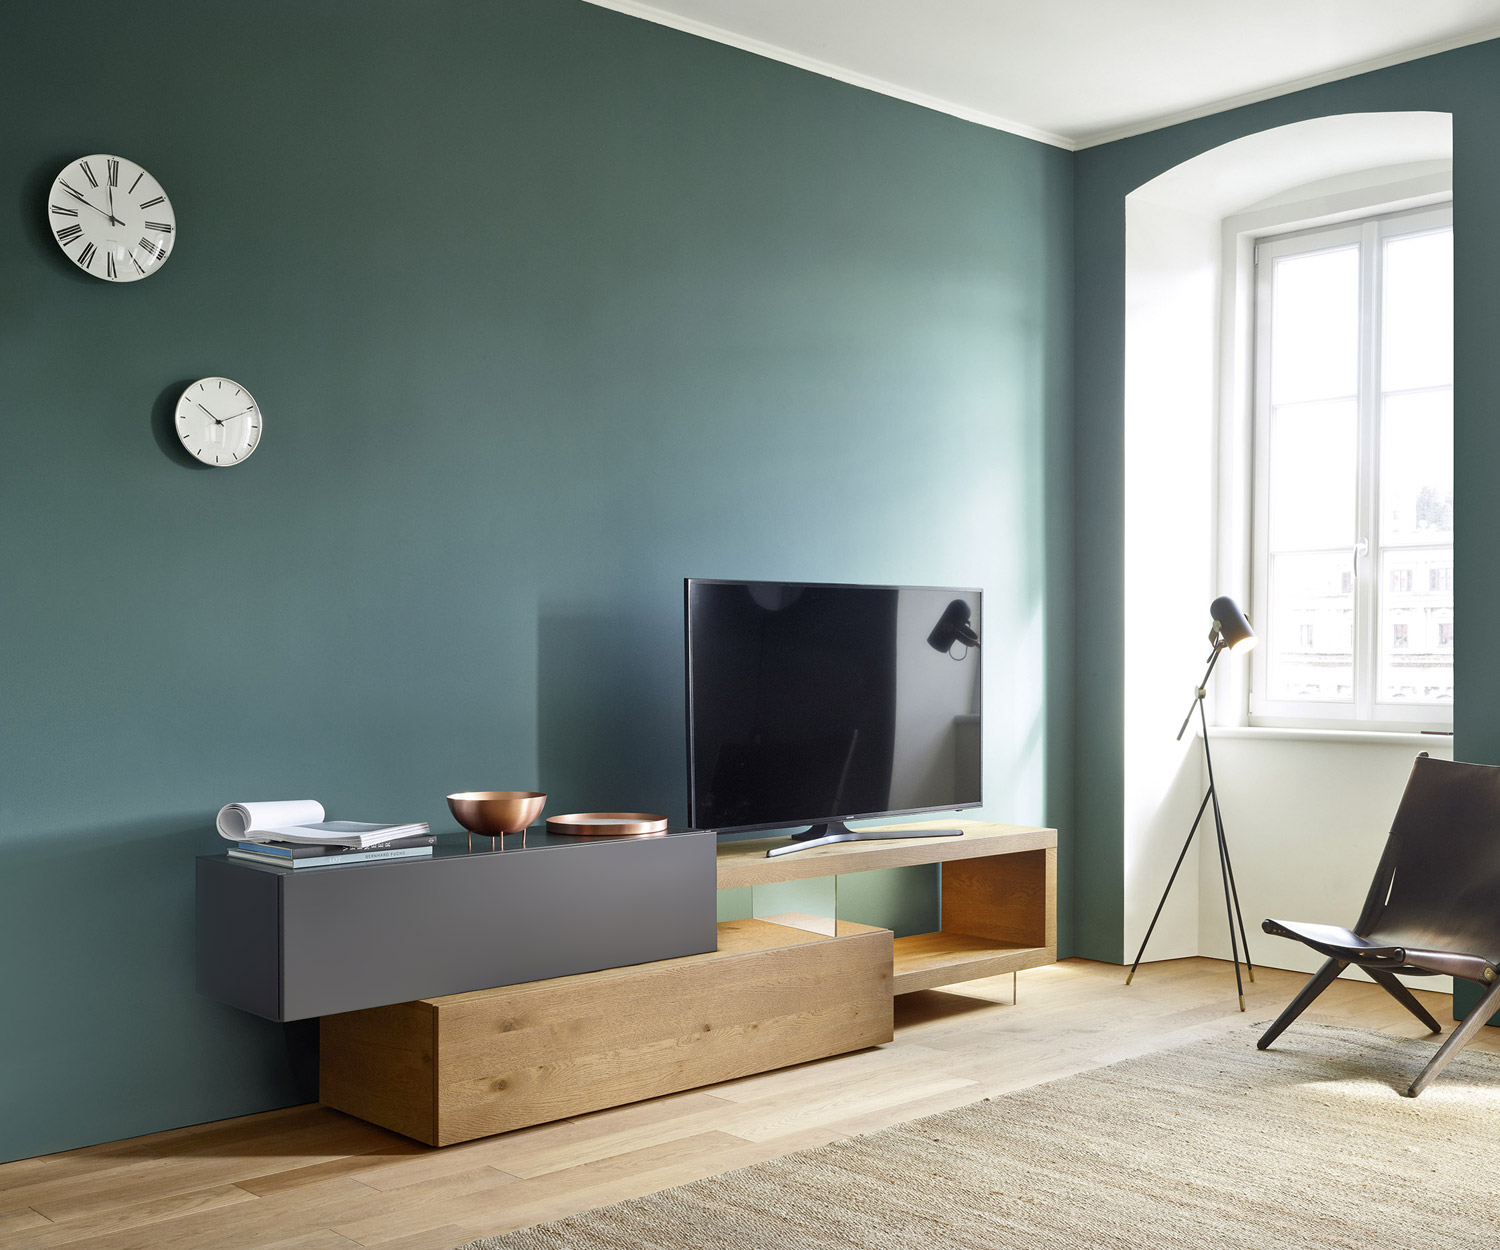 Modern design TV wandmeubel C32 van Livitalia voor smalle ruimtes met vleugeldeuren op 2 kasten